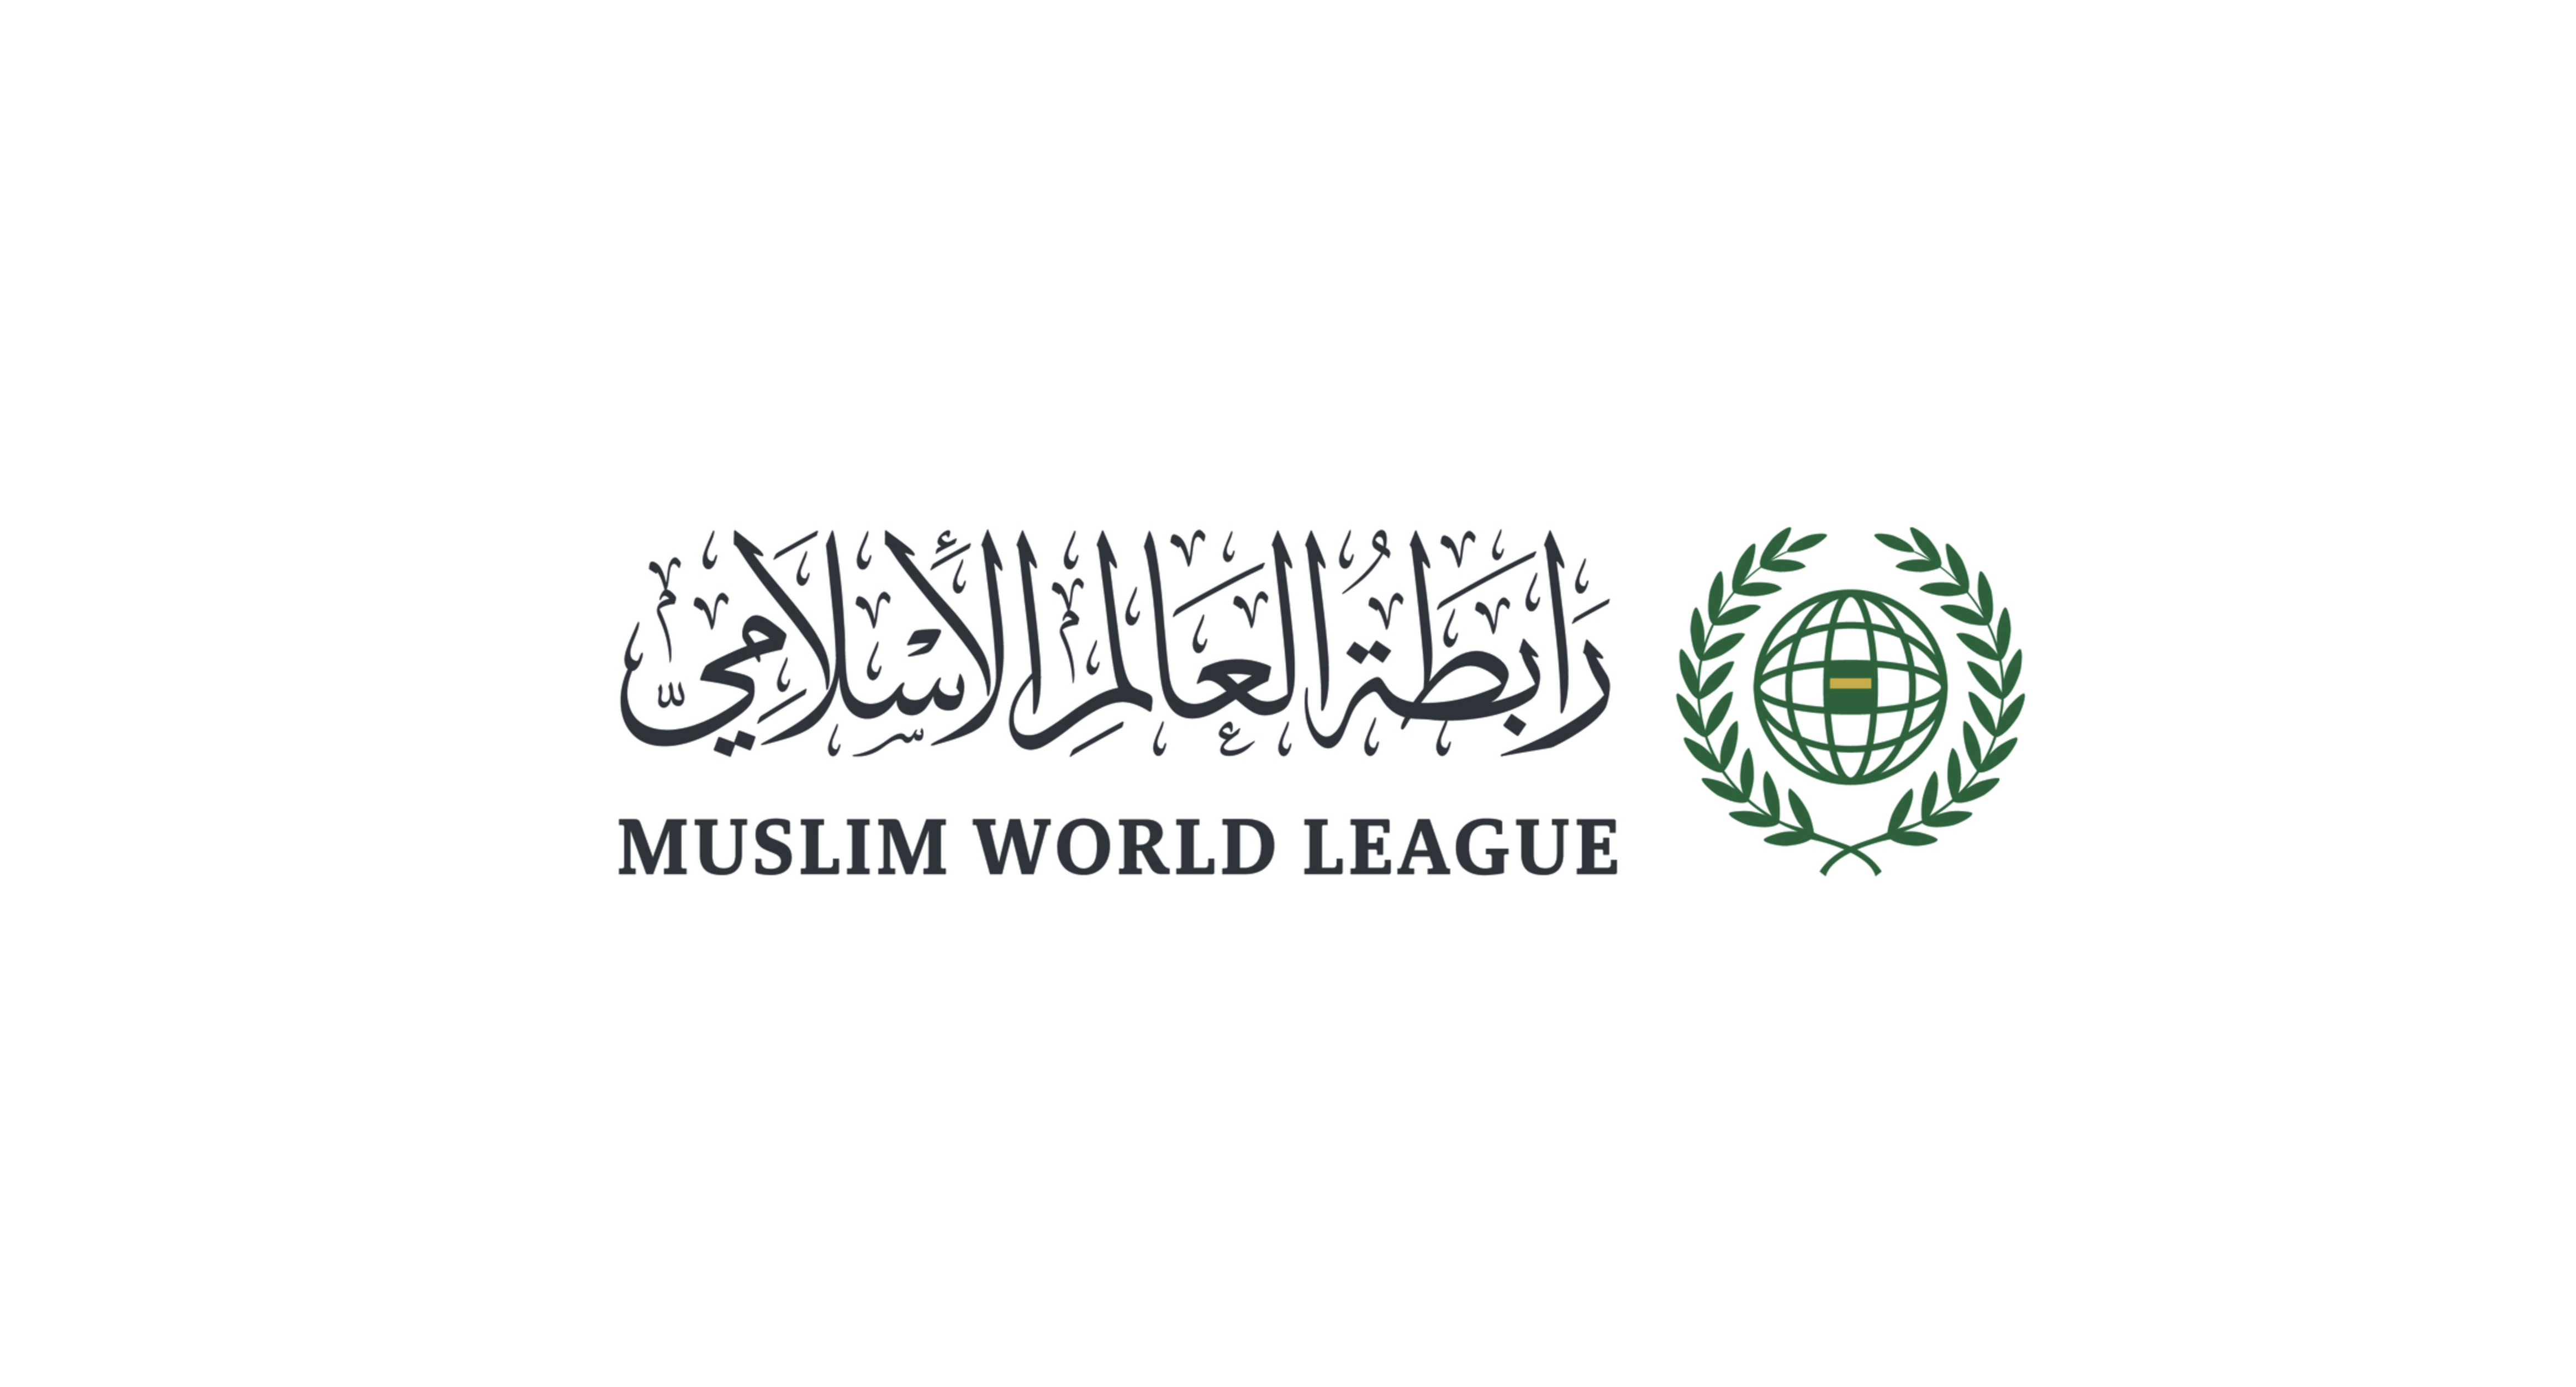 Мекка-Саудовская Аравия — Всемирная исламская лига самым решительным образом осудила вооруженный террористический акт, произошедший в Crocus City Hall в Подмосковье